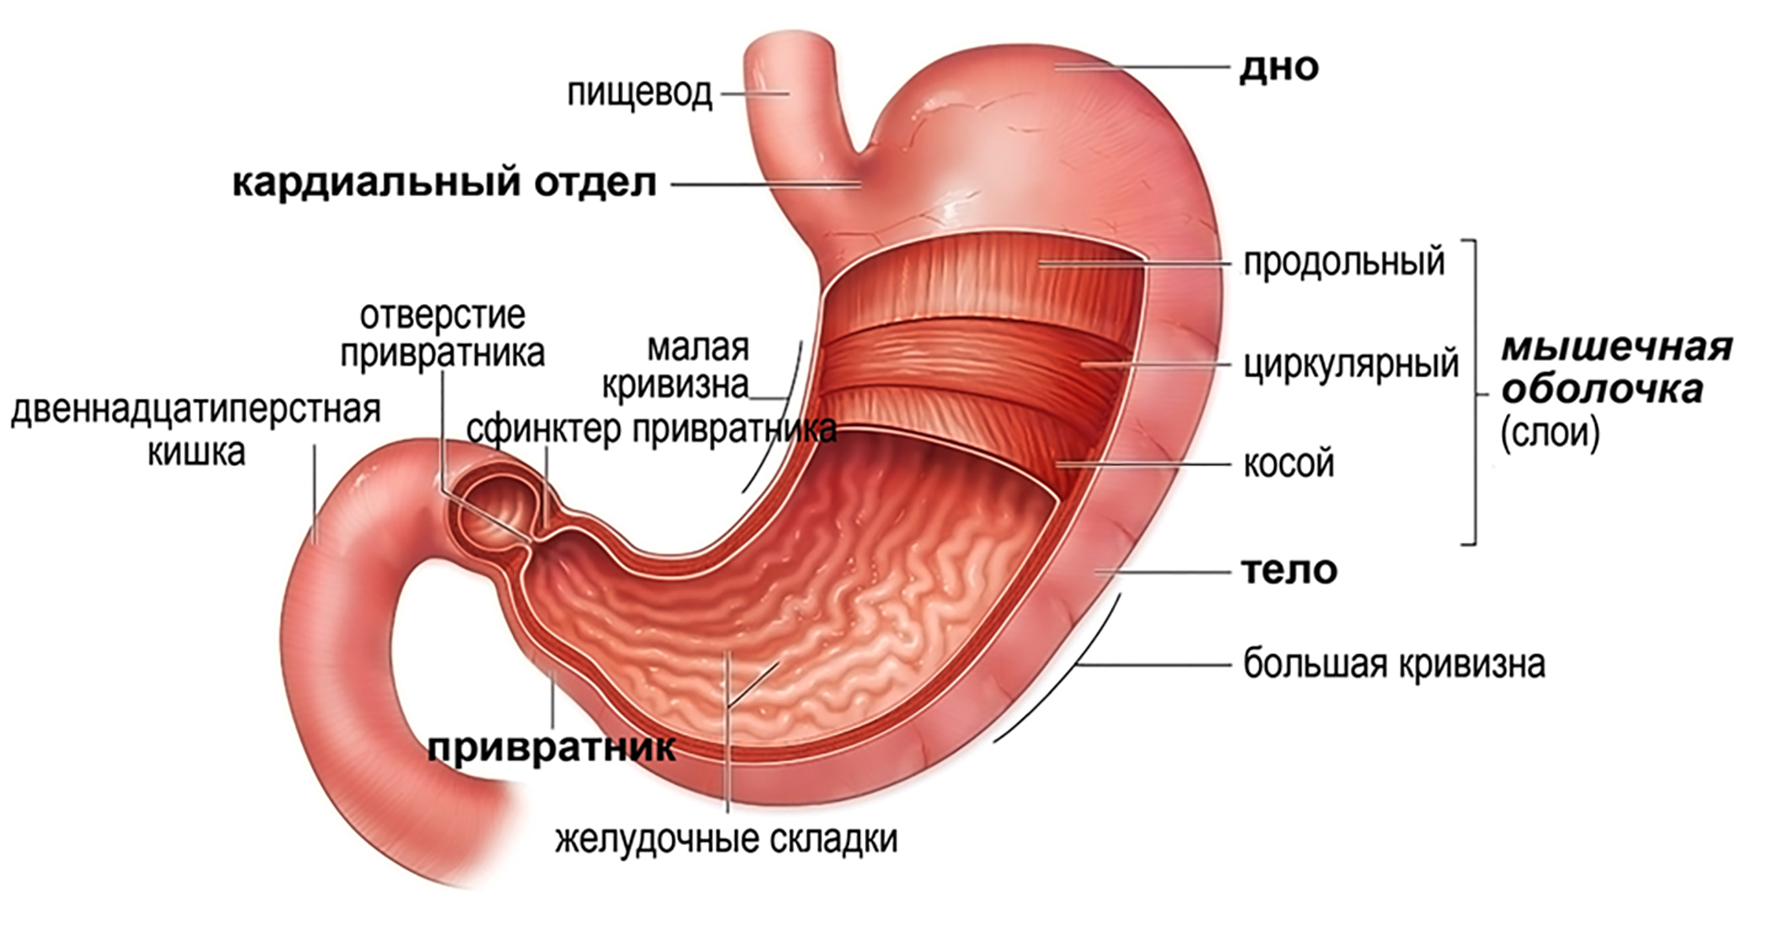 Покажите картинки желудок. Желудок строение и функции анатомия. Внешнее и внутреннее строение желудка. Желудок рисунок с подписями. Желудок схема.